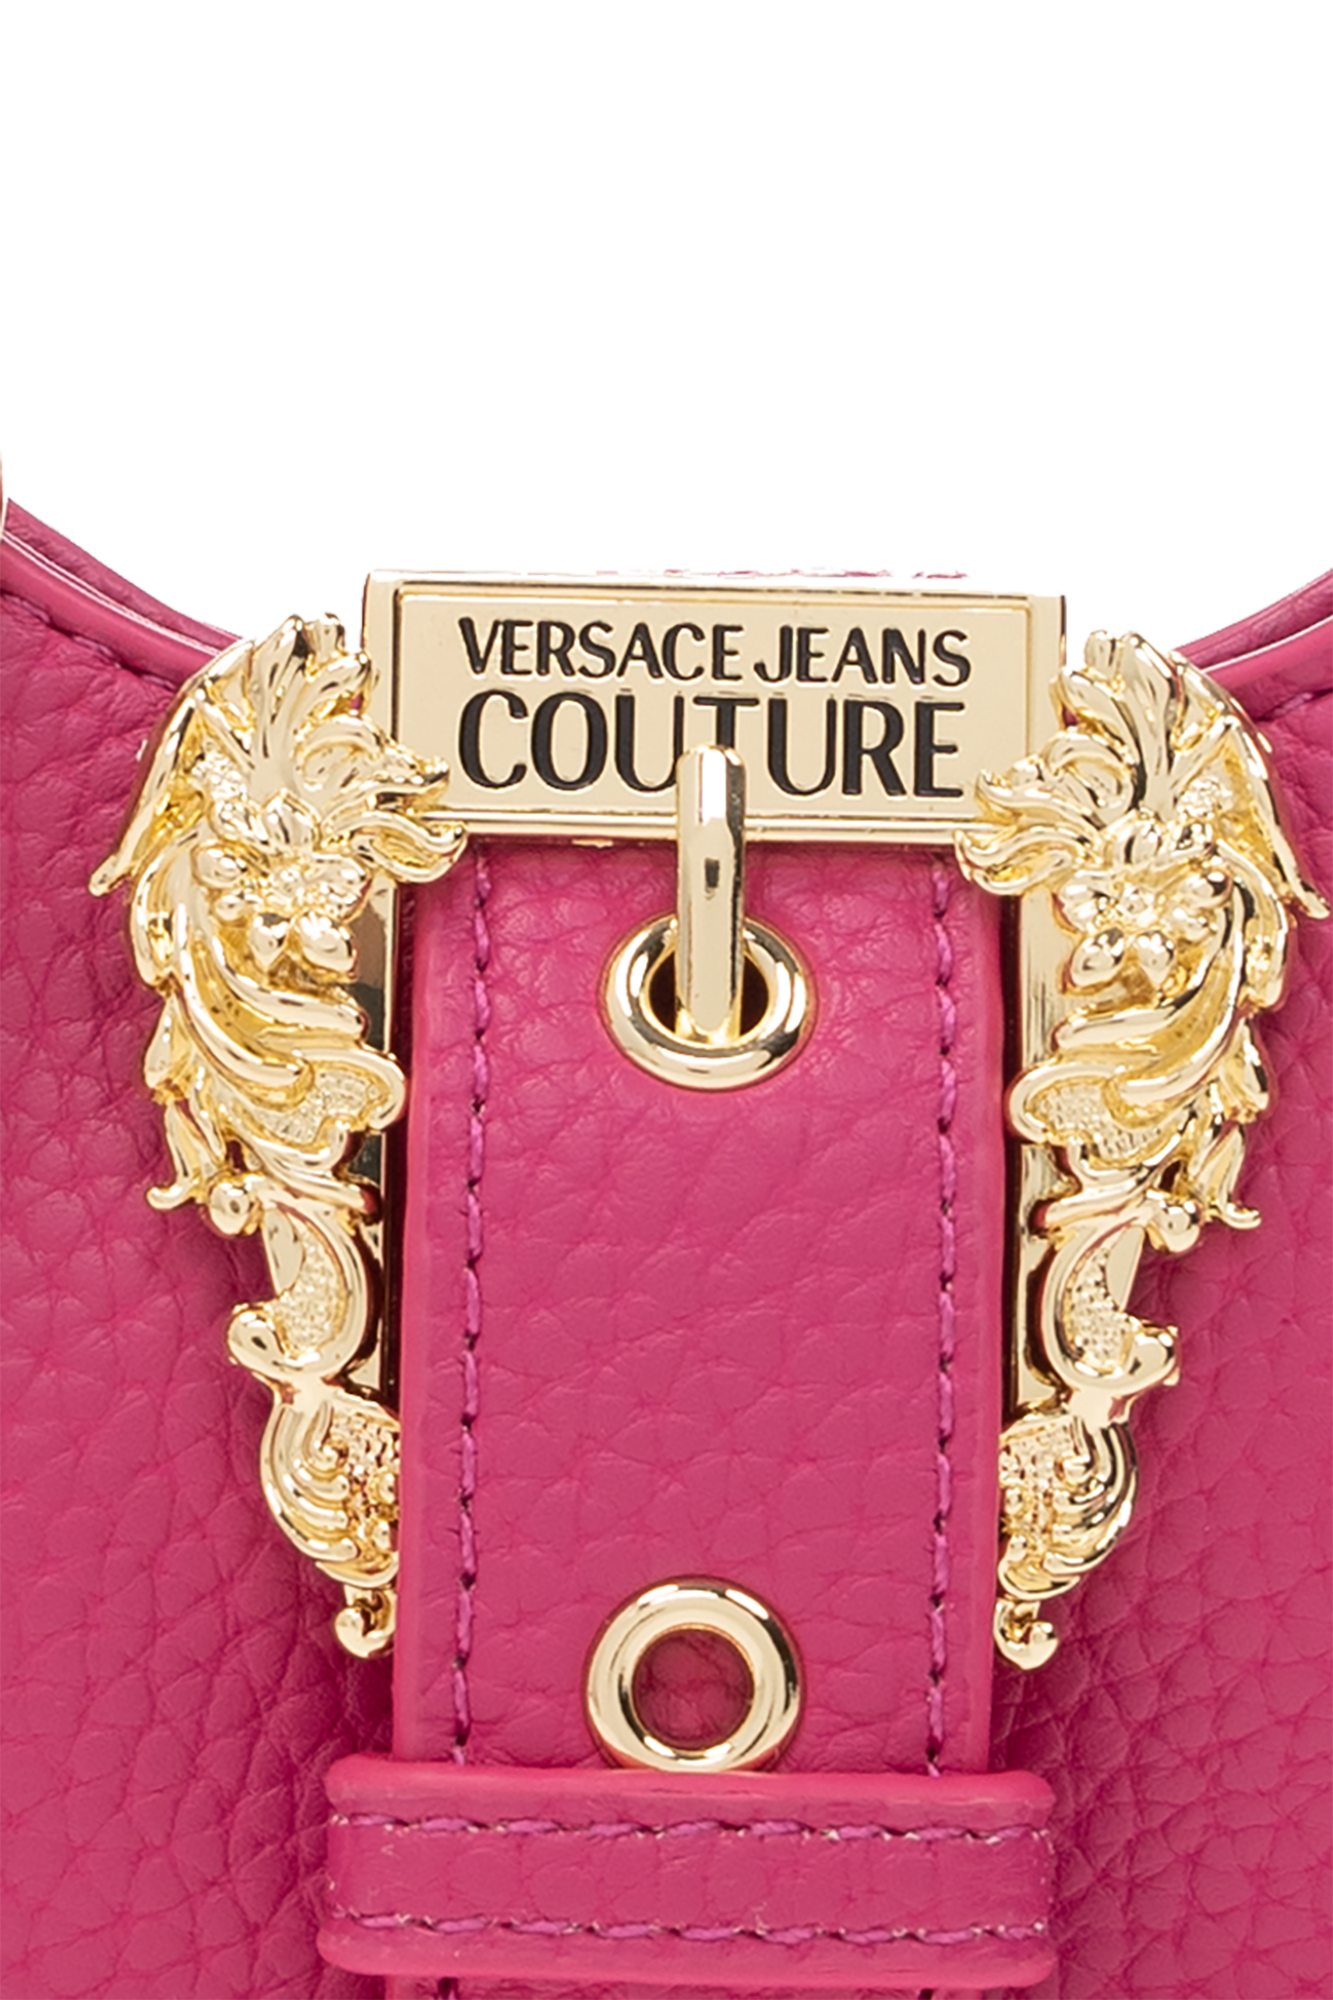 Pink Couture I Shoulder Bag